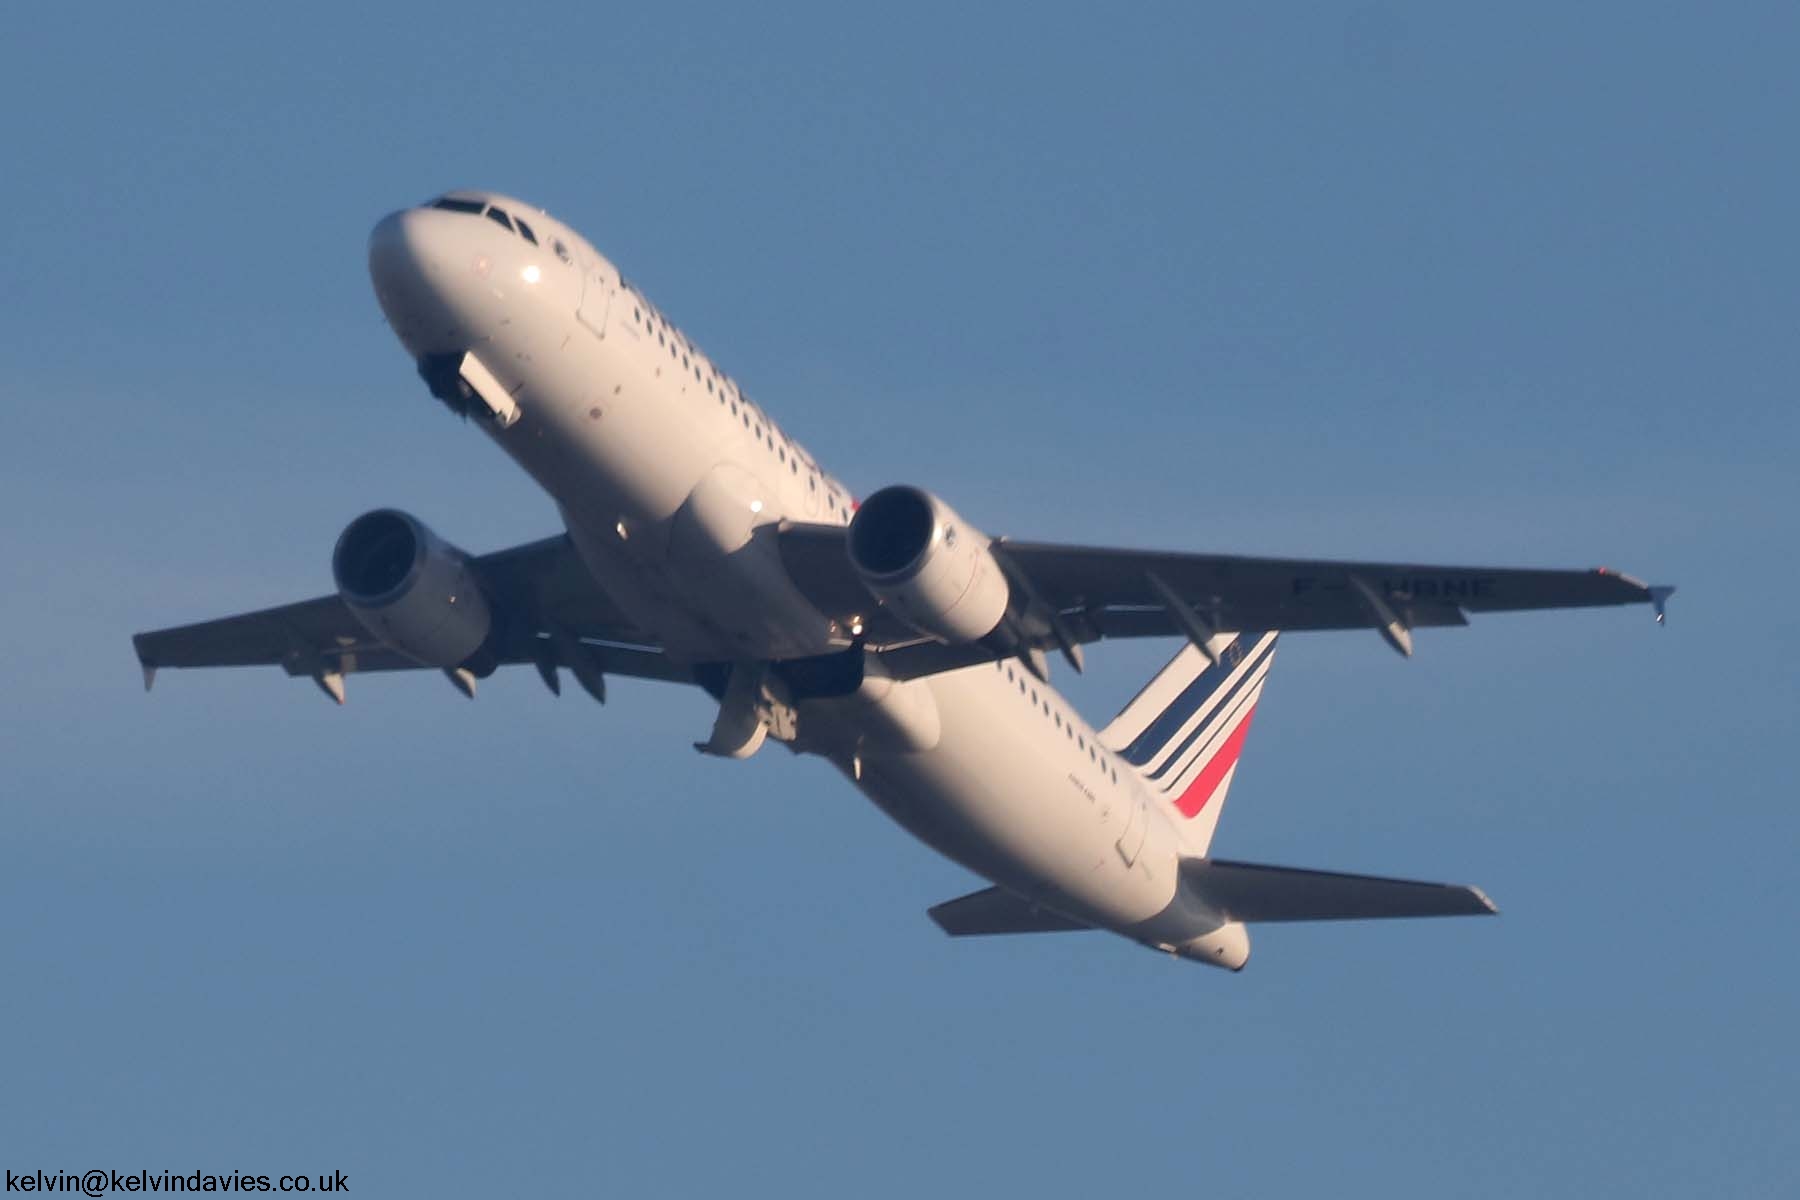 Air France A320 F-HBNE